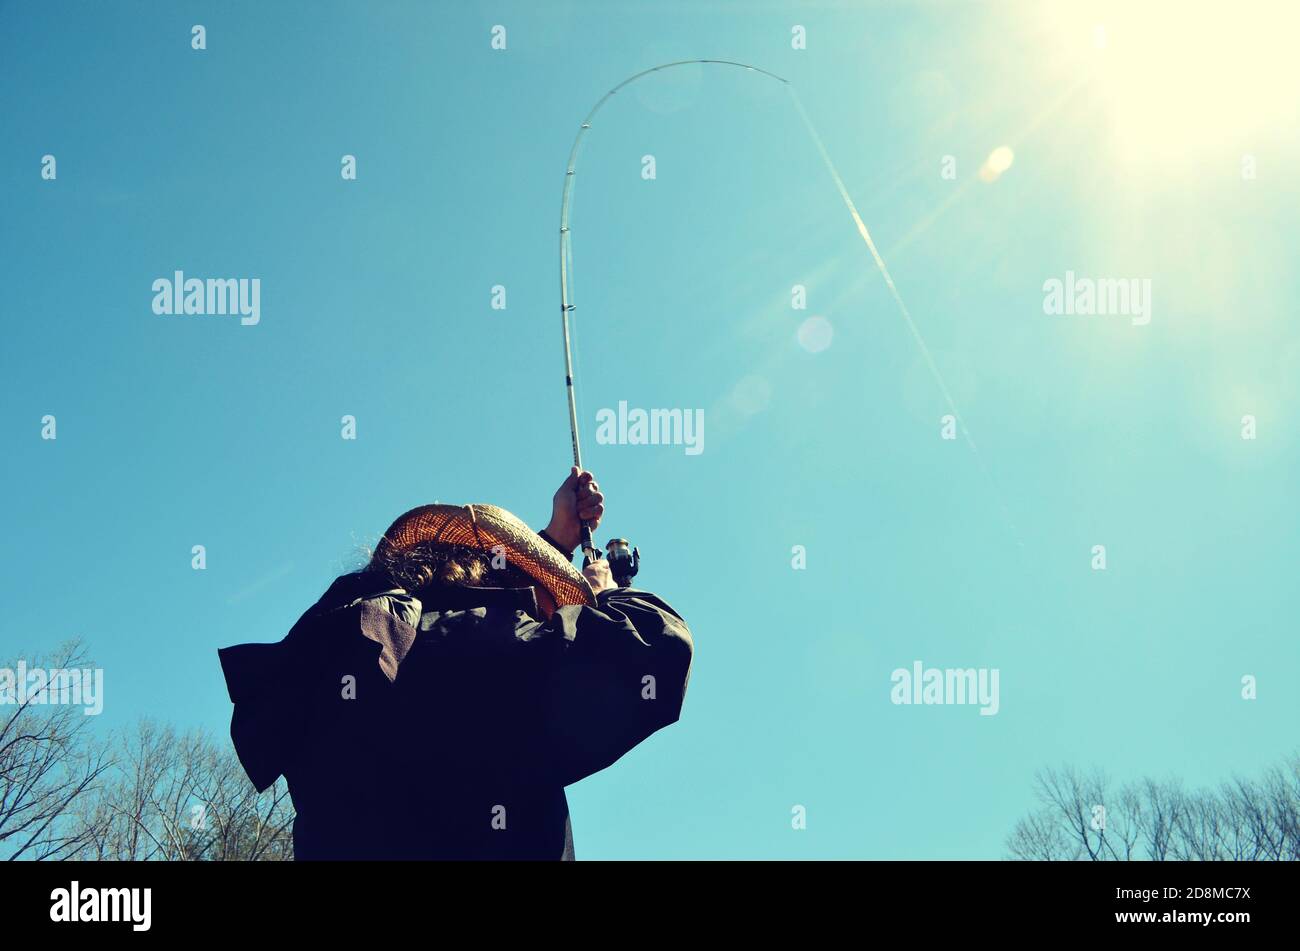 Homme portant un chapeau de cow-boy, dos tourné vers l'appareil photo. Tenant un poteau de pêche courbé en haut, avec la ligne attrapant l'éblouissement du soleil. Banque D'Images